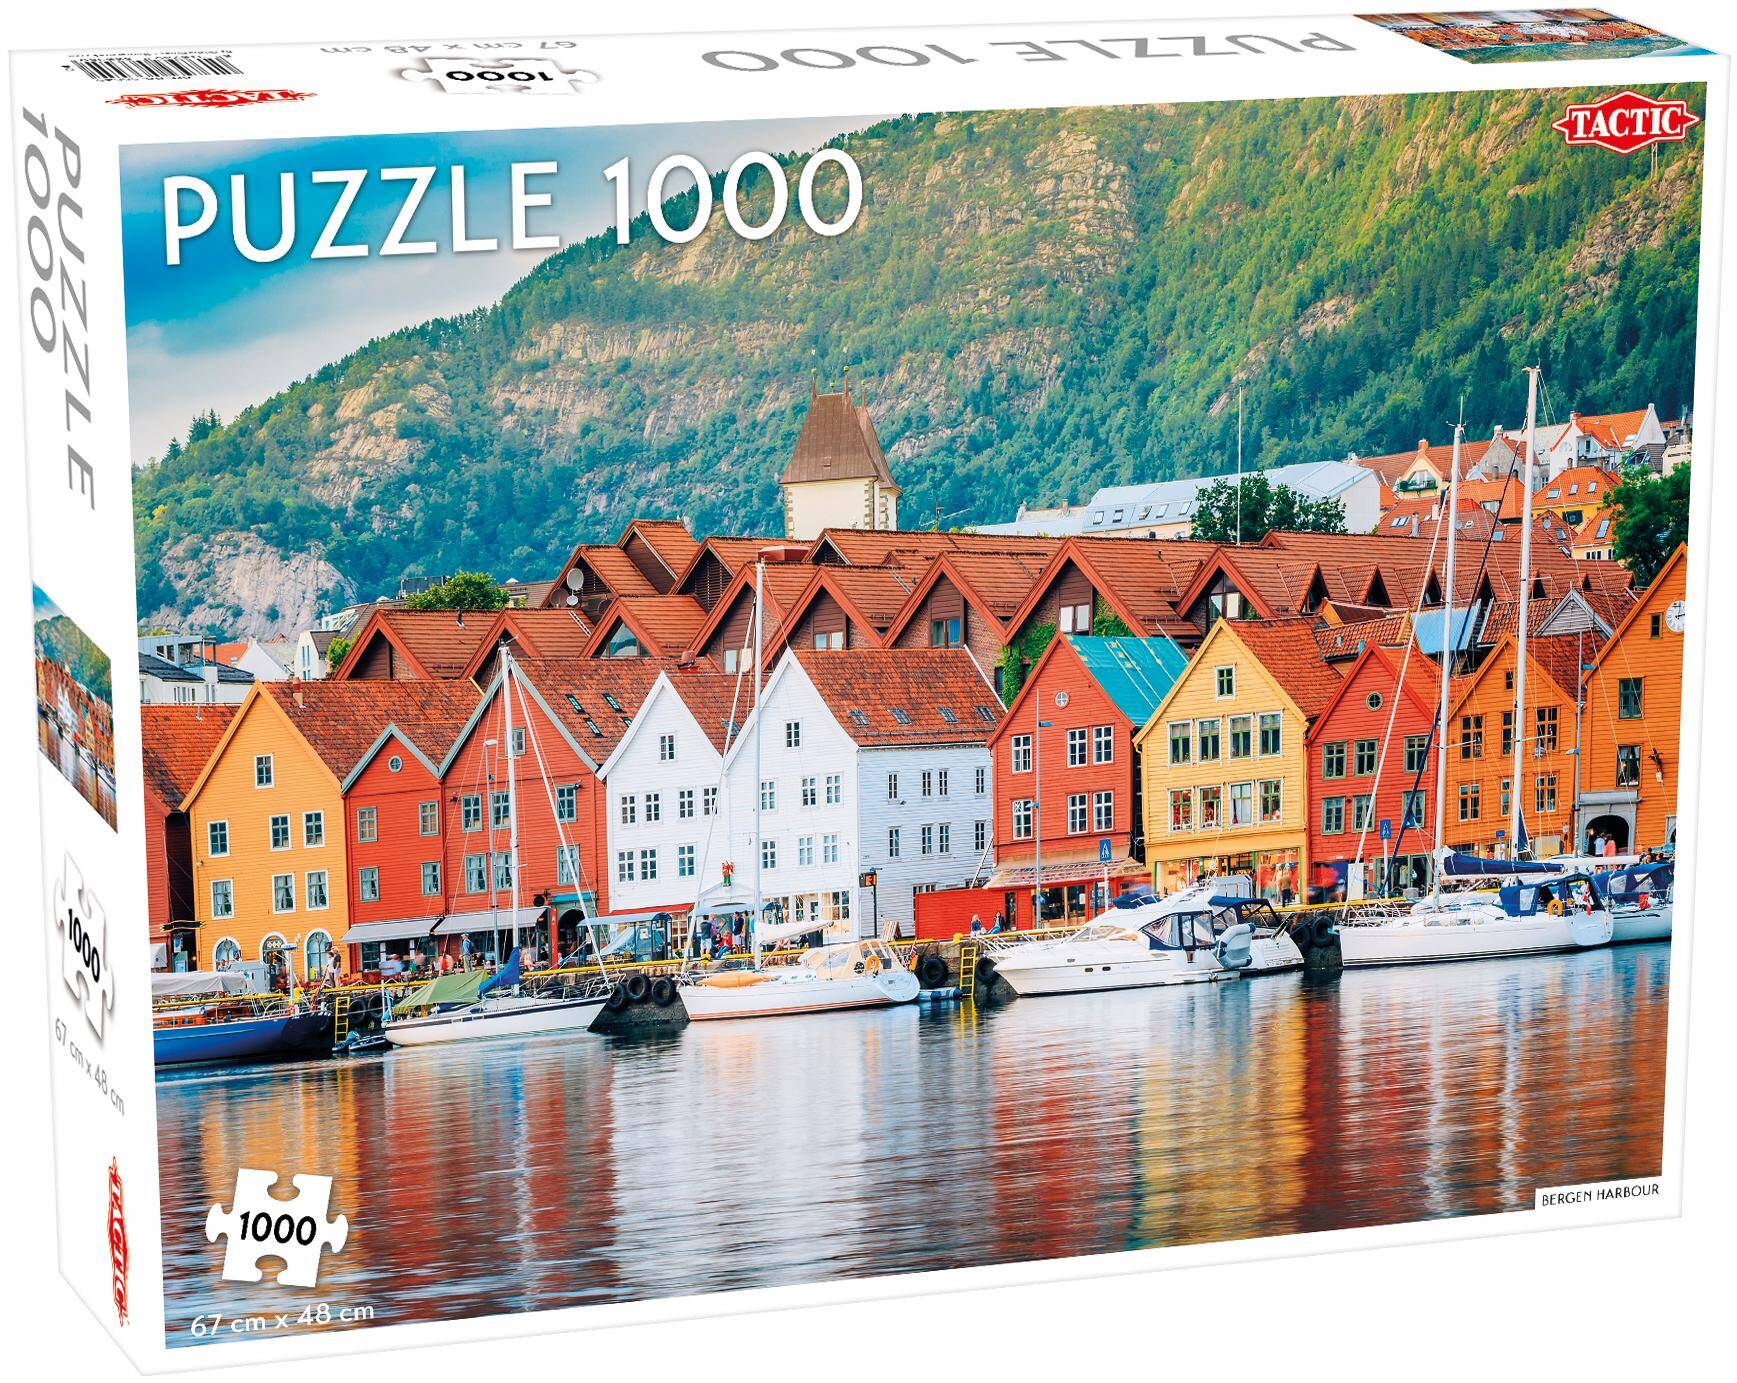 Puzzle 1000 Around the World Northern Stars Bergen Harbour